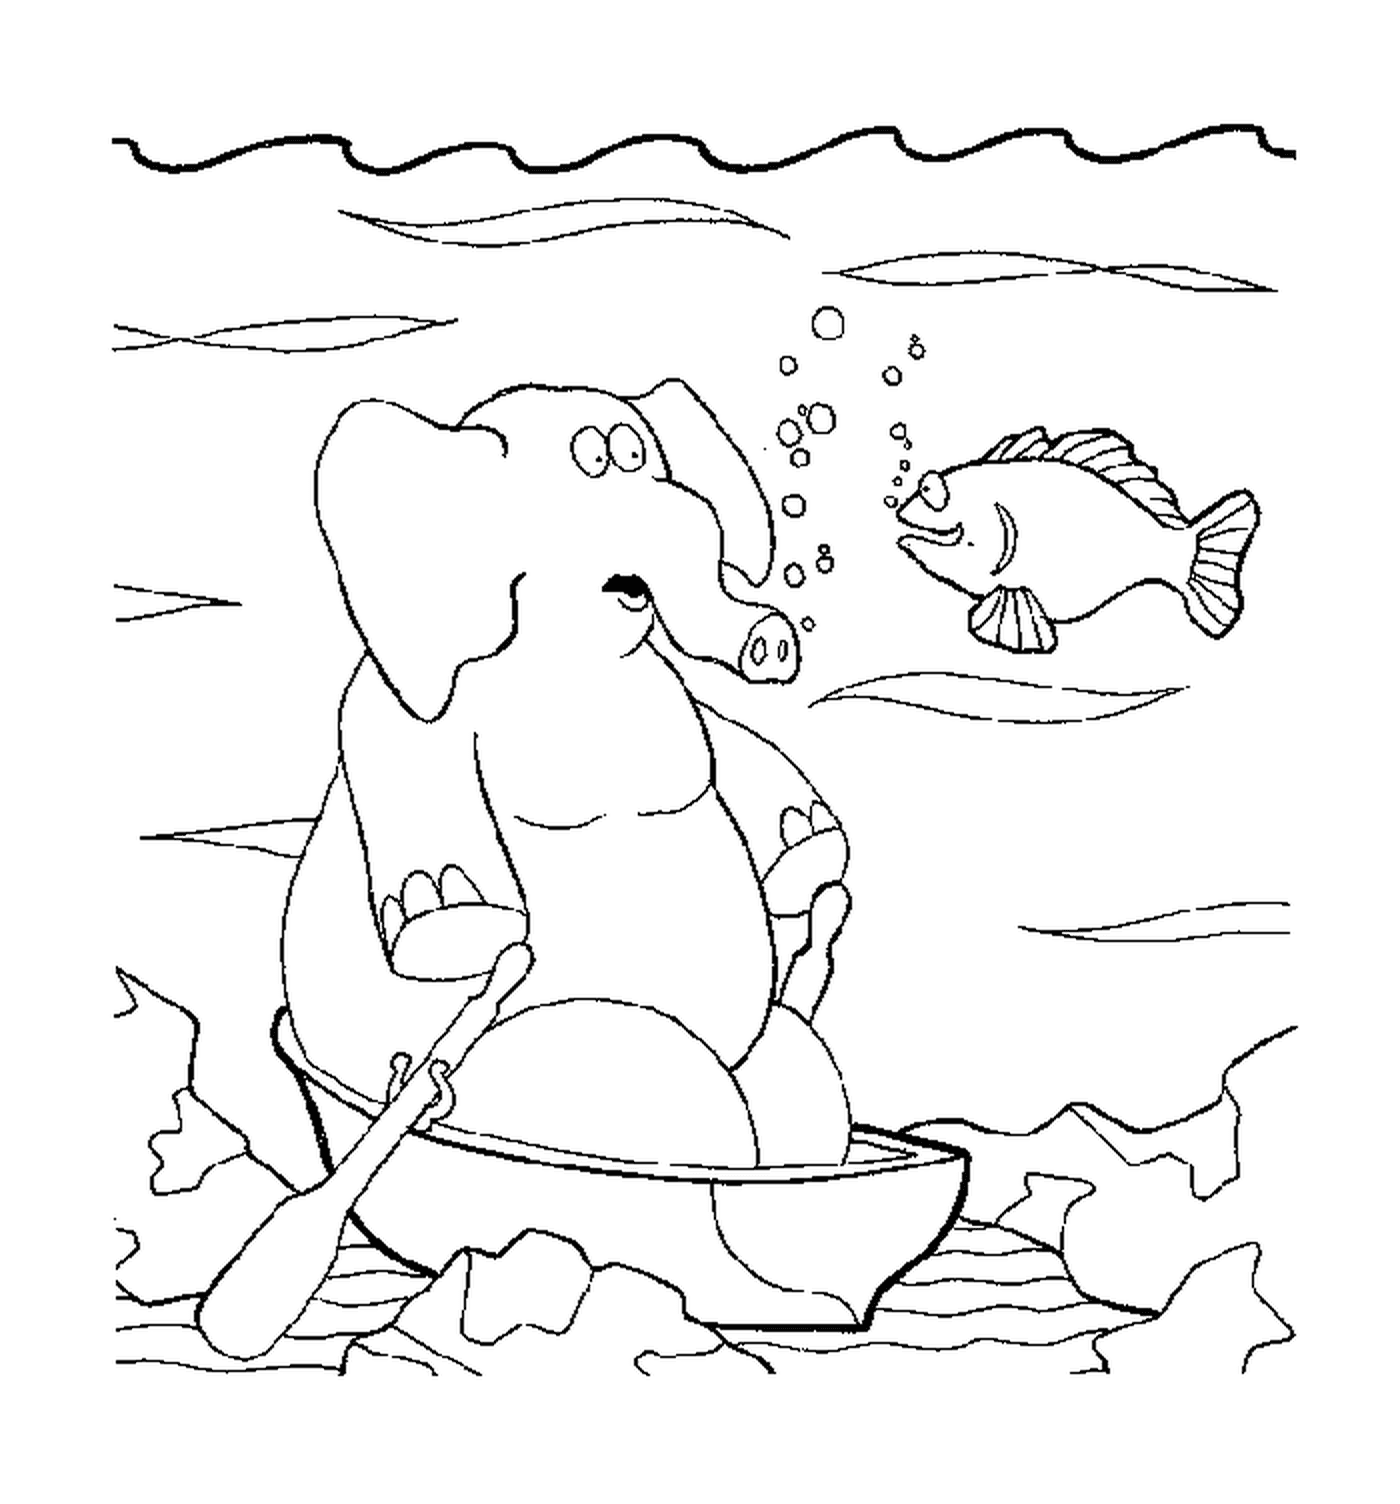  Un elefante bajo el agua 